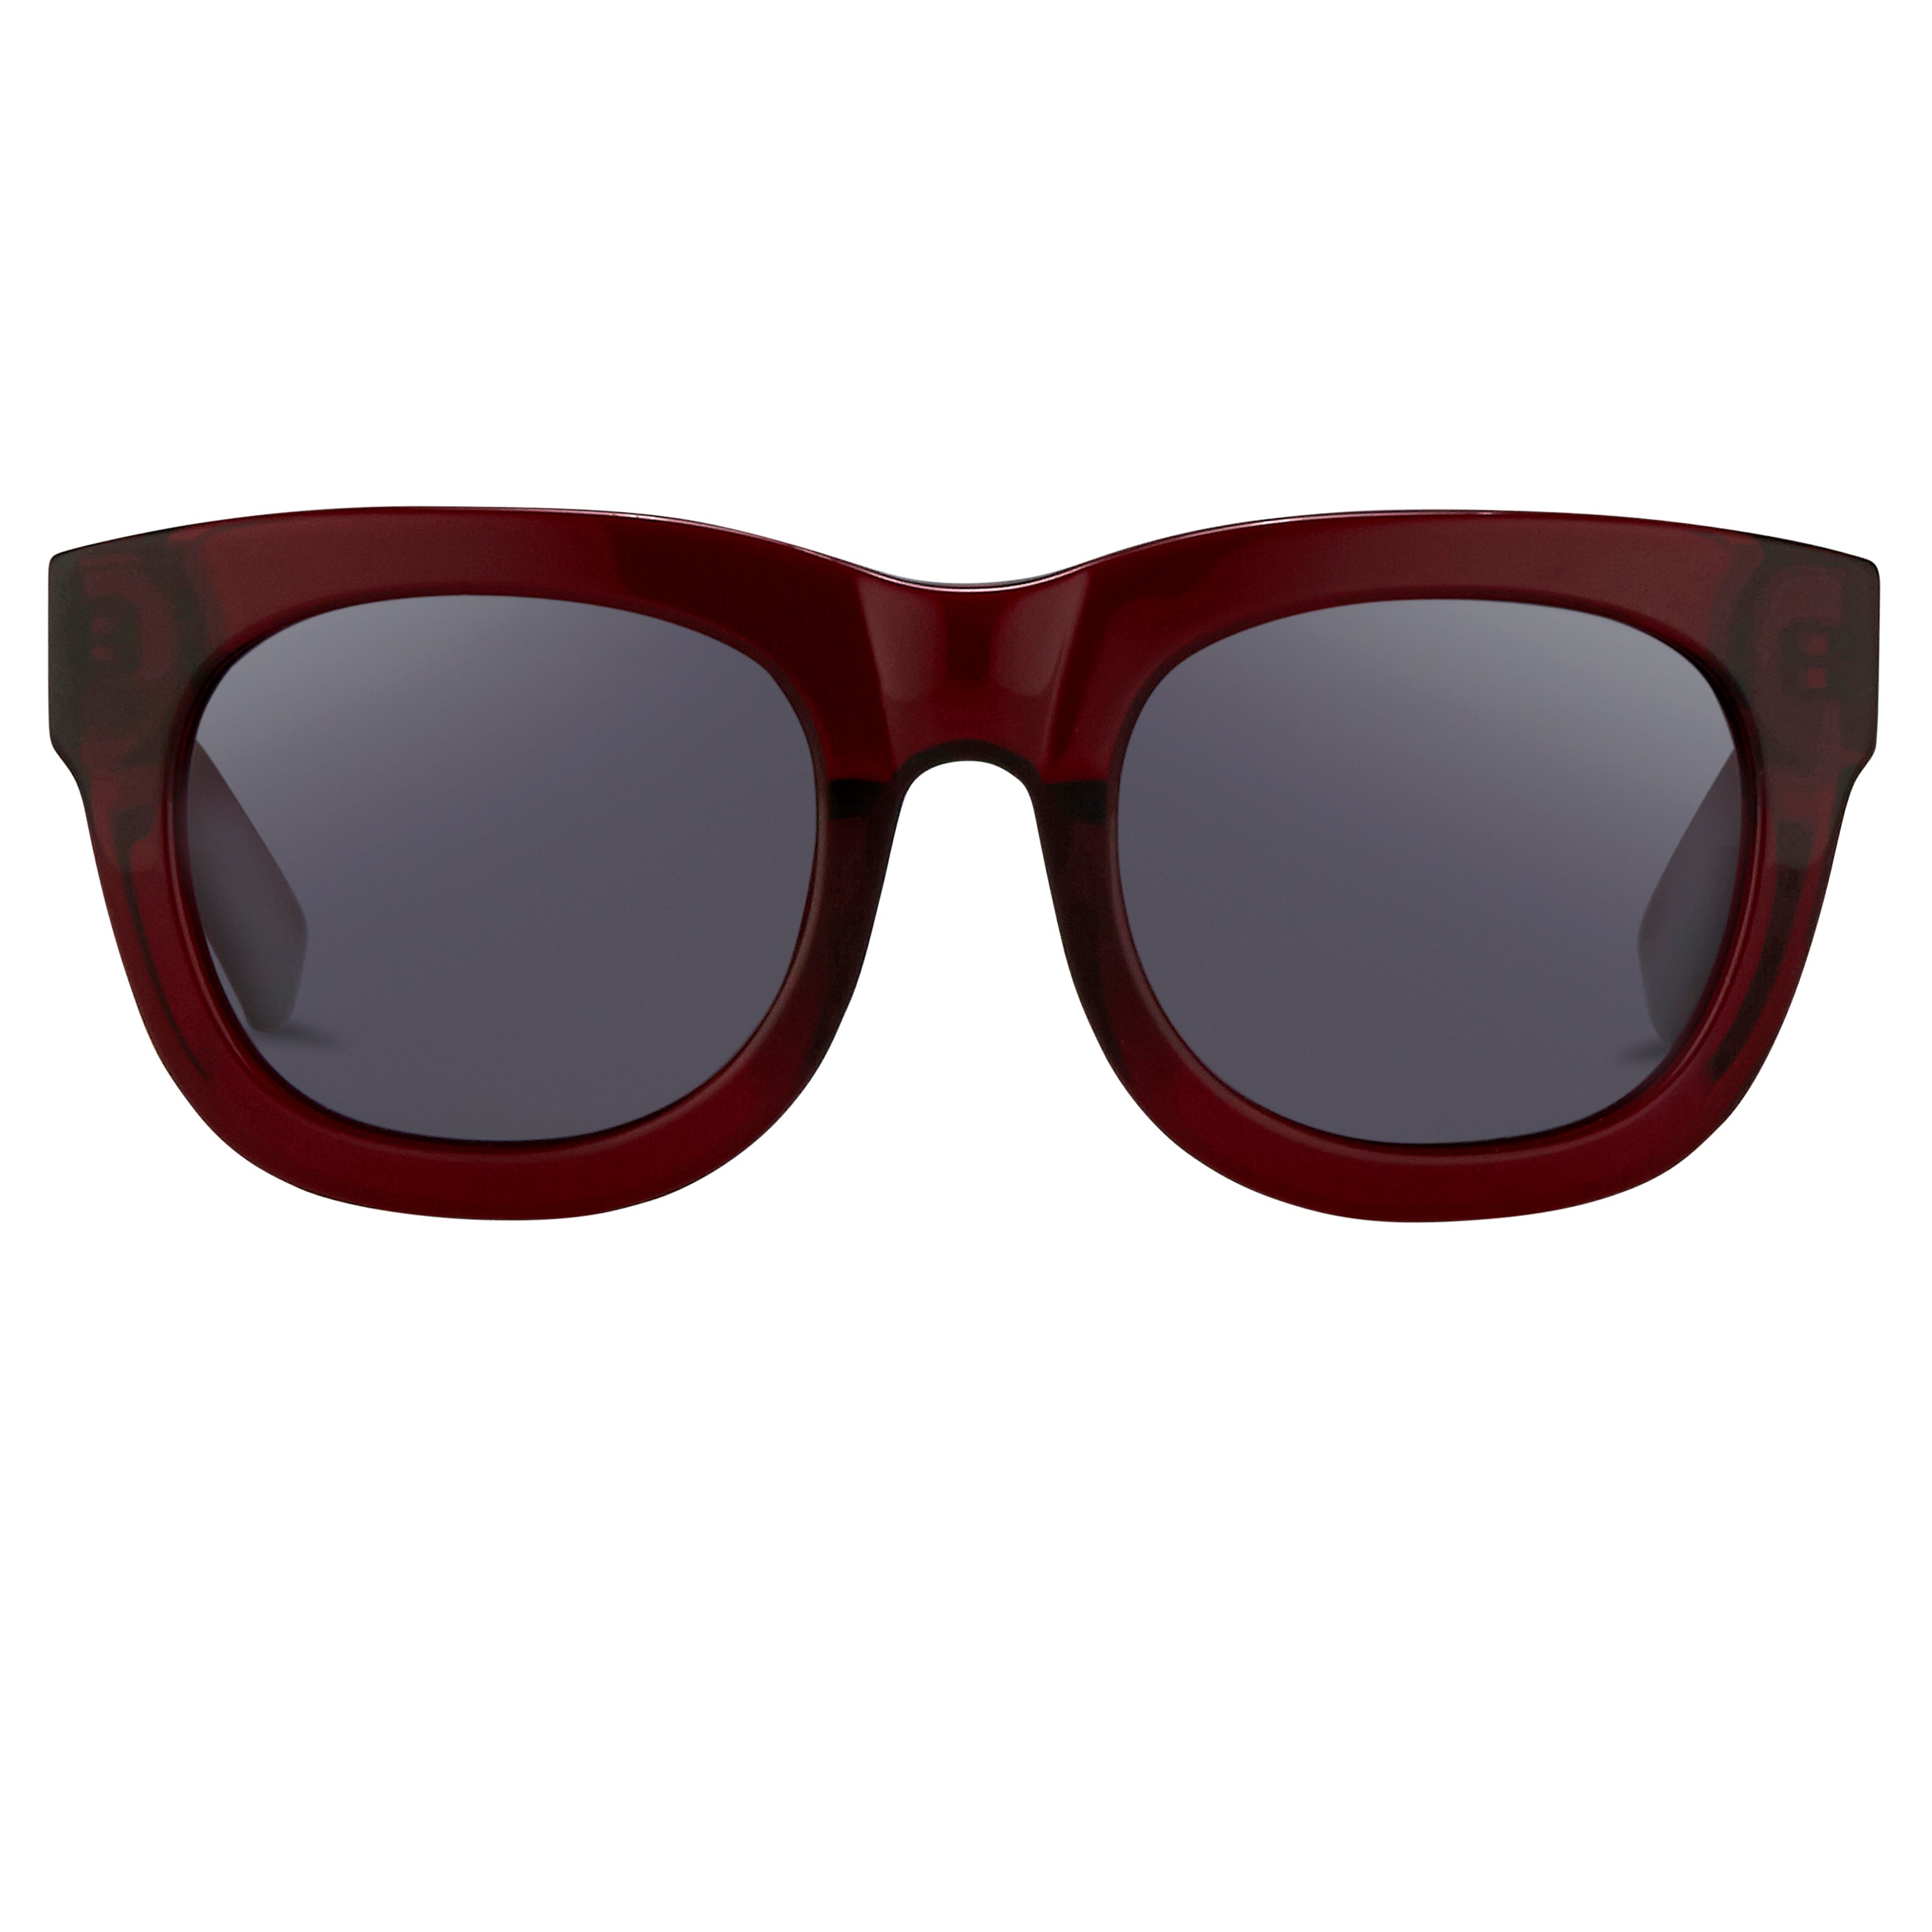 3.1 Phillip Lim 159 C6 D-Frame Sunglasses